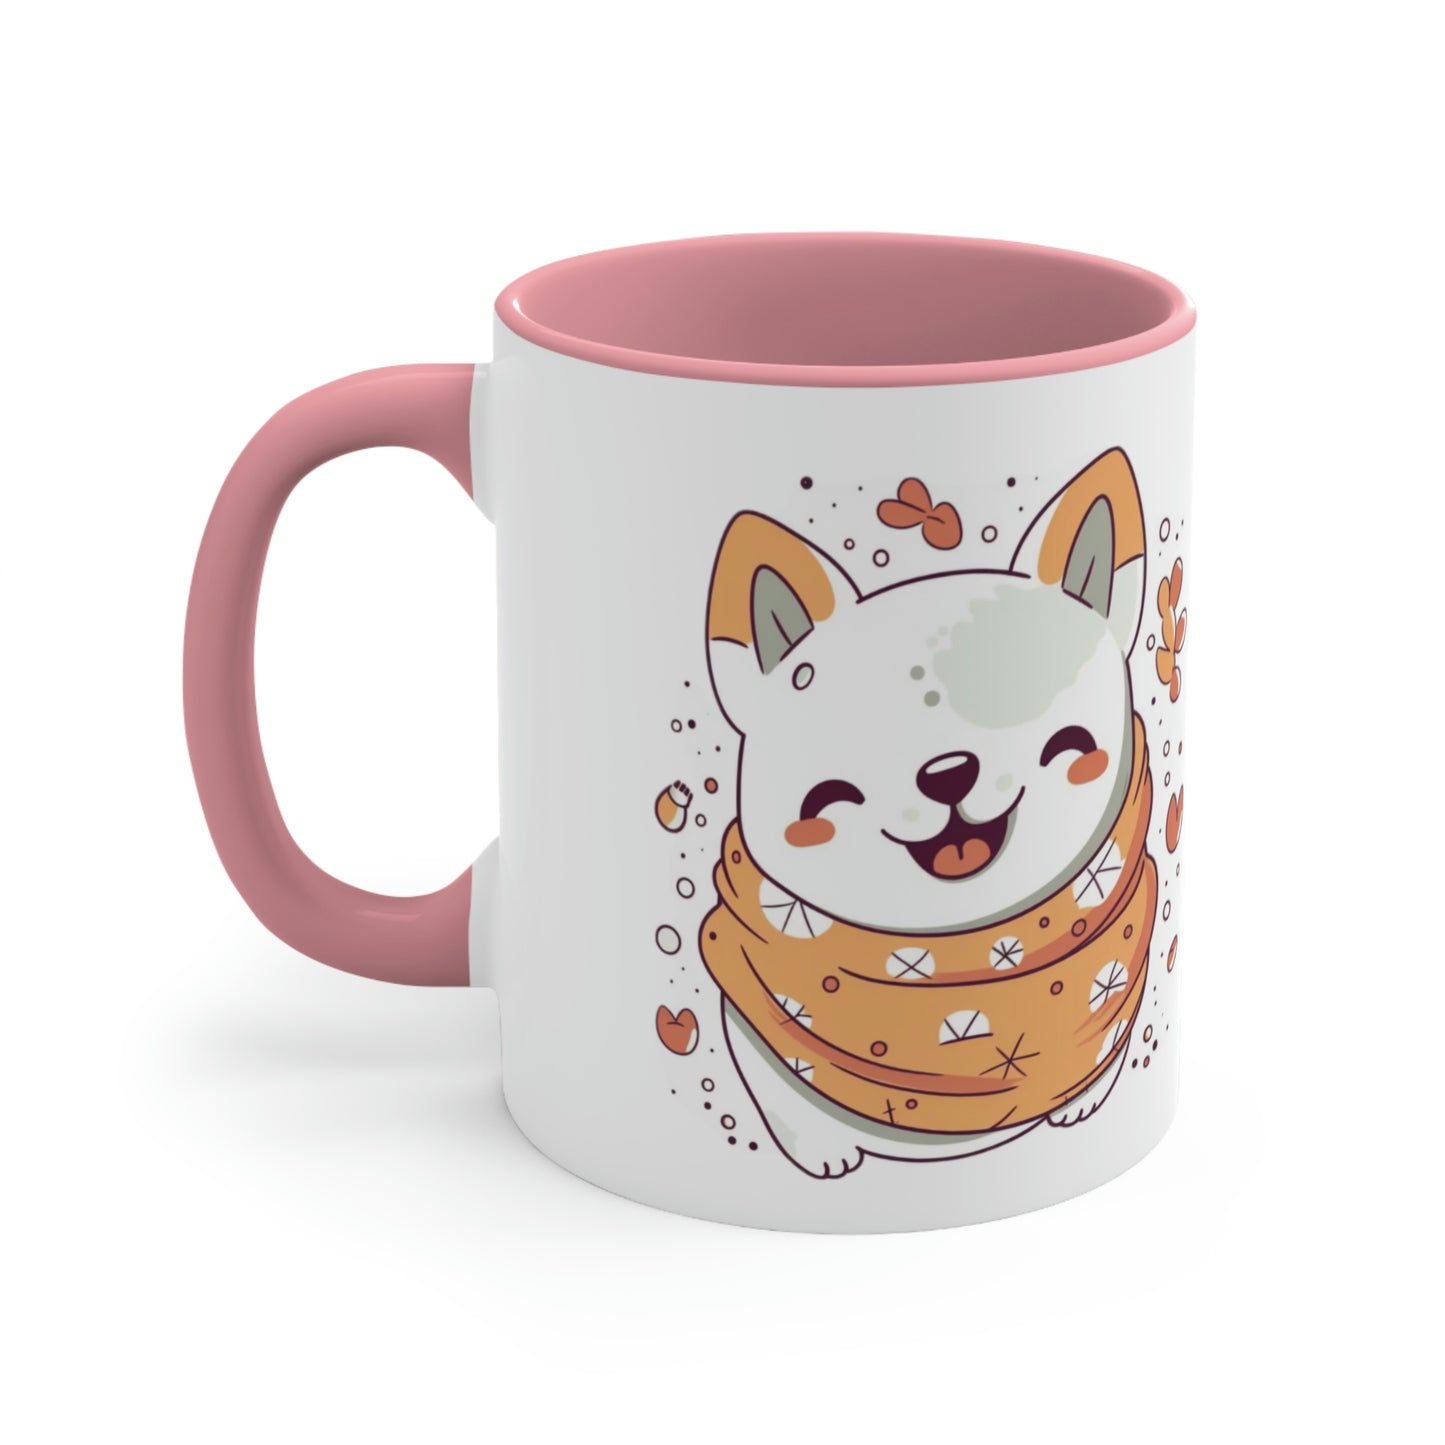 Fur-ever Faithful Accent Coffee Mug, 11oz